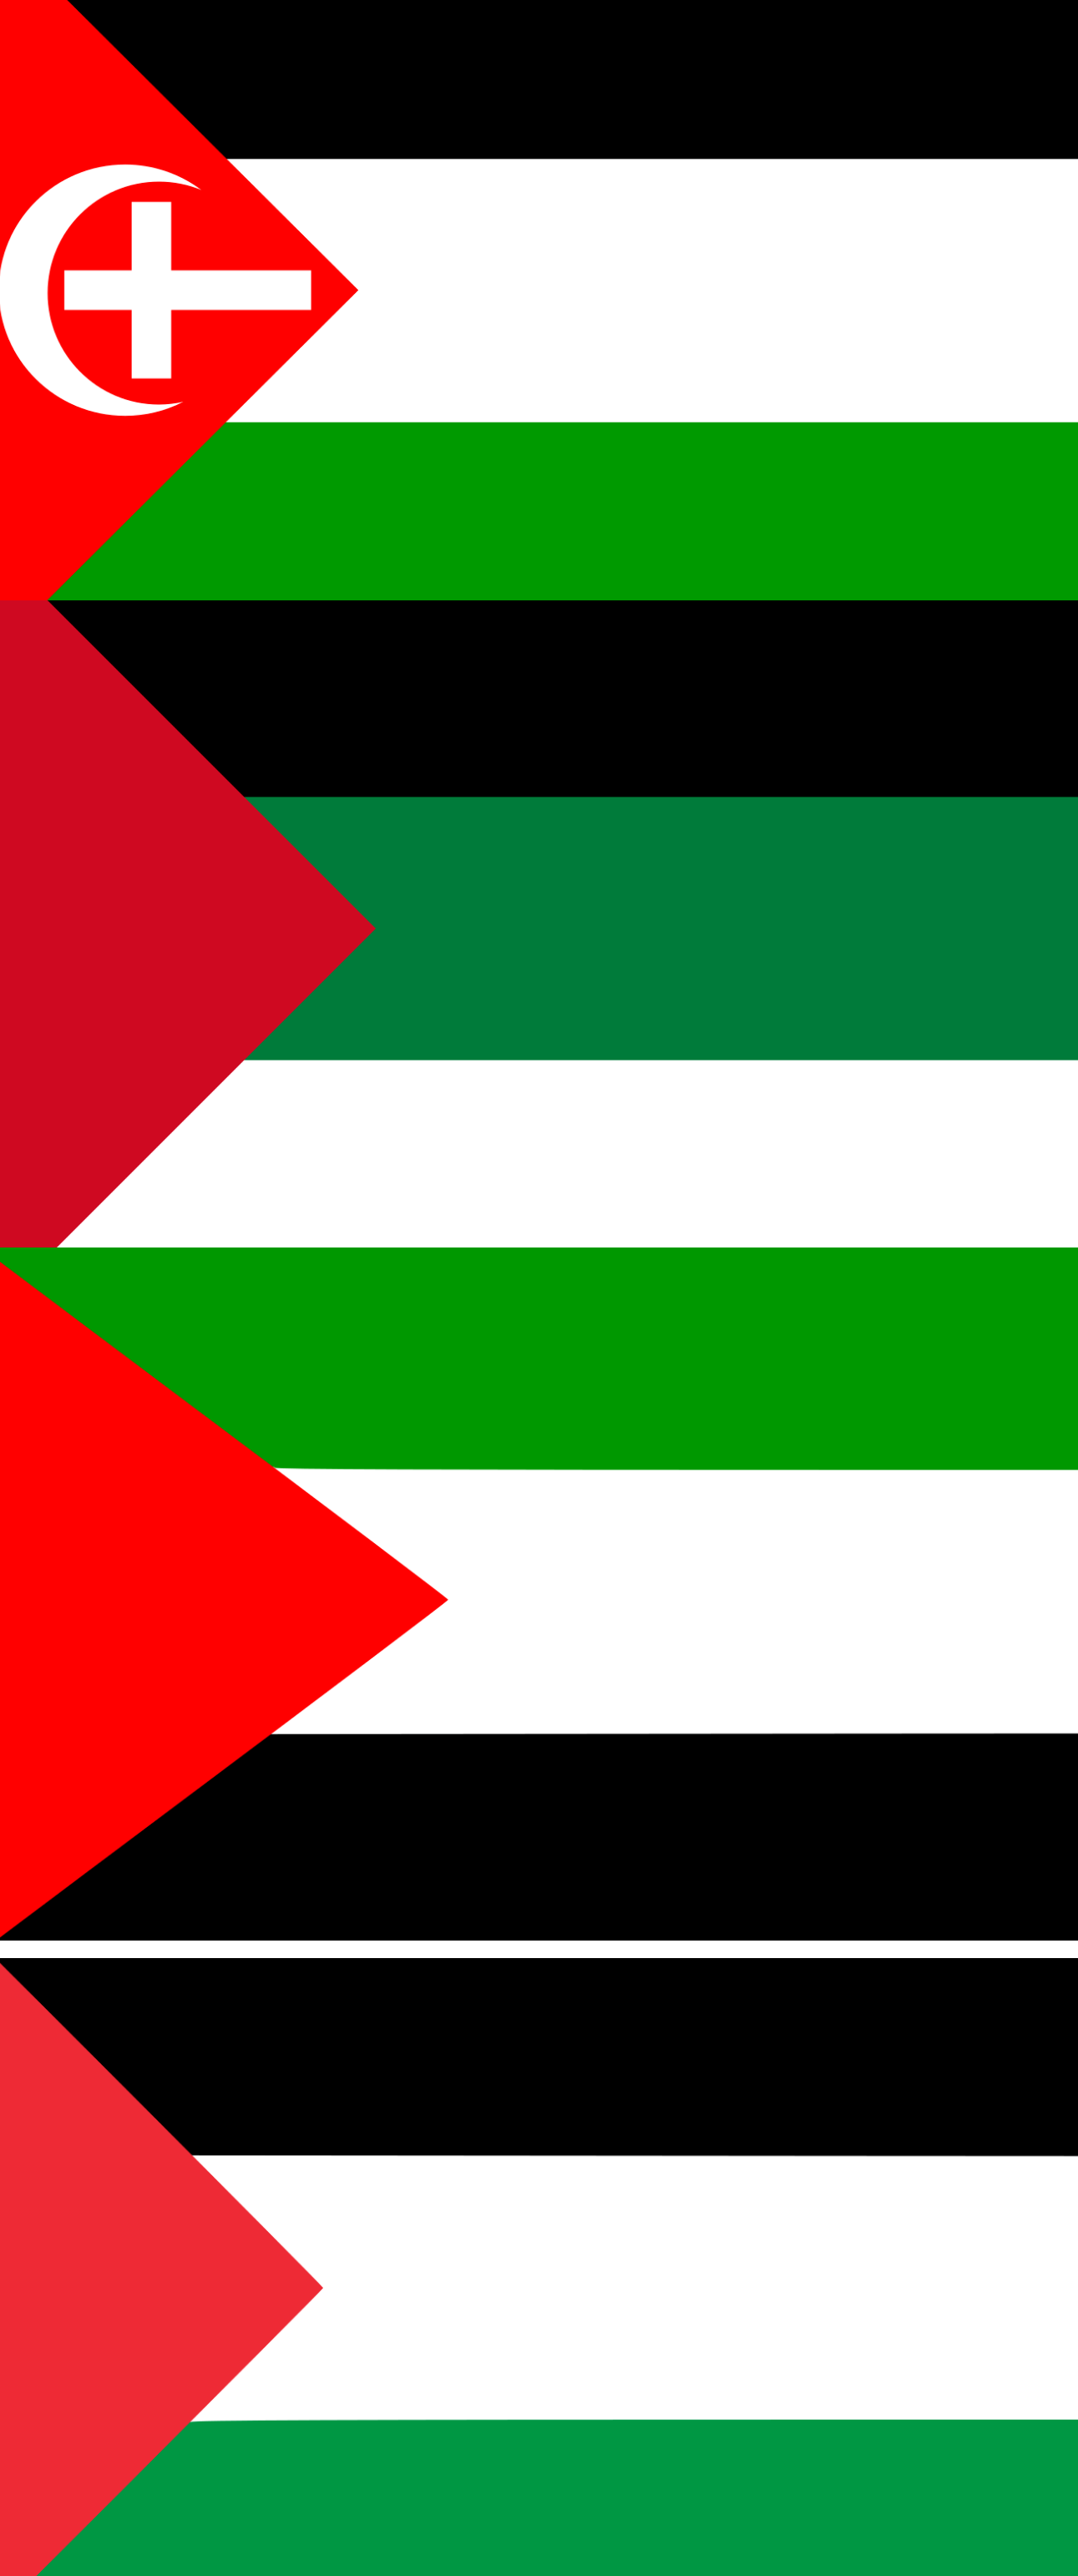 تطور شكل العلم الفلسطيني من قبل قيام الكيان الصهيوني حتى الآن